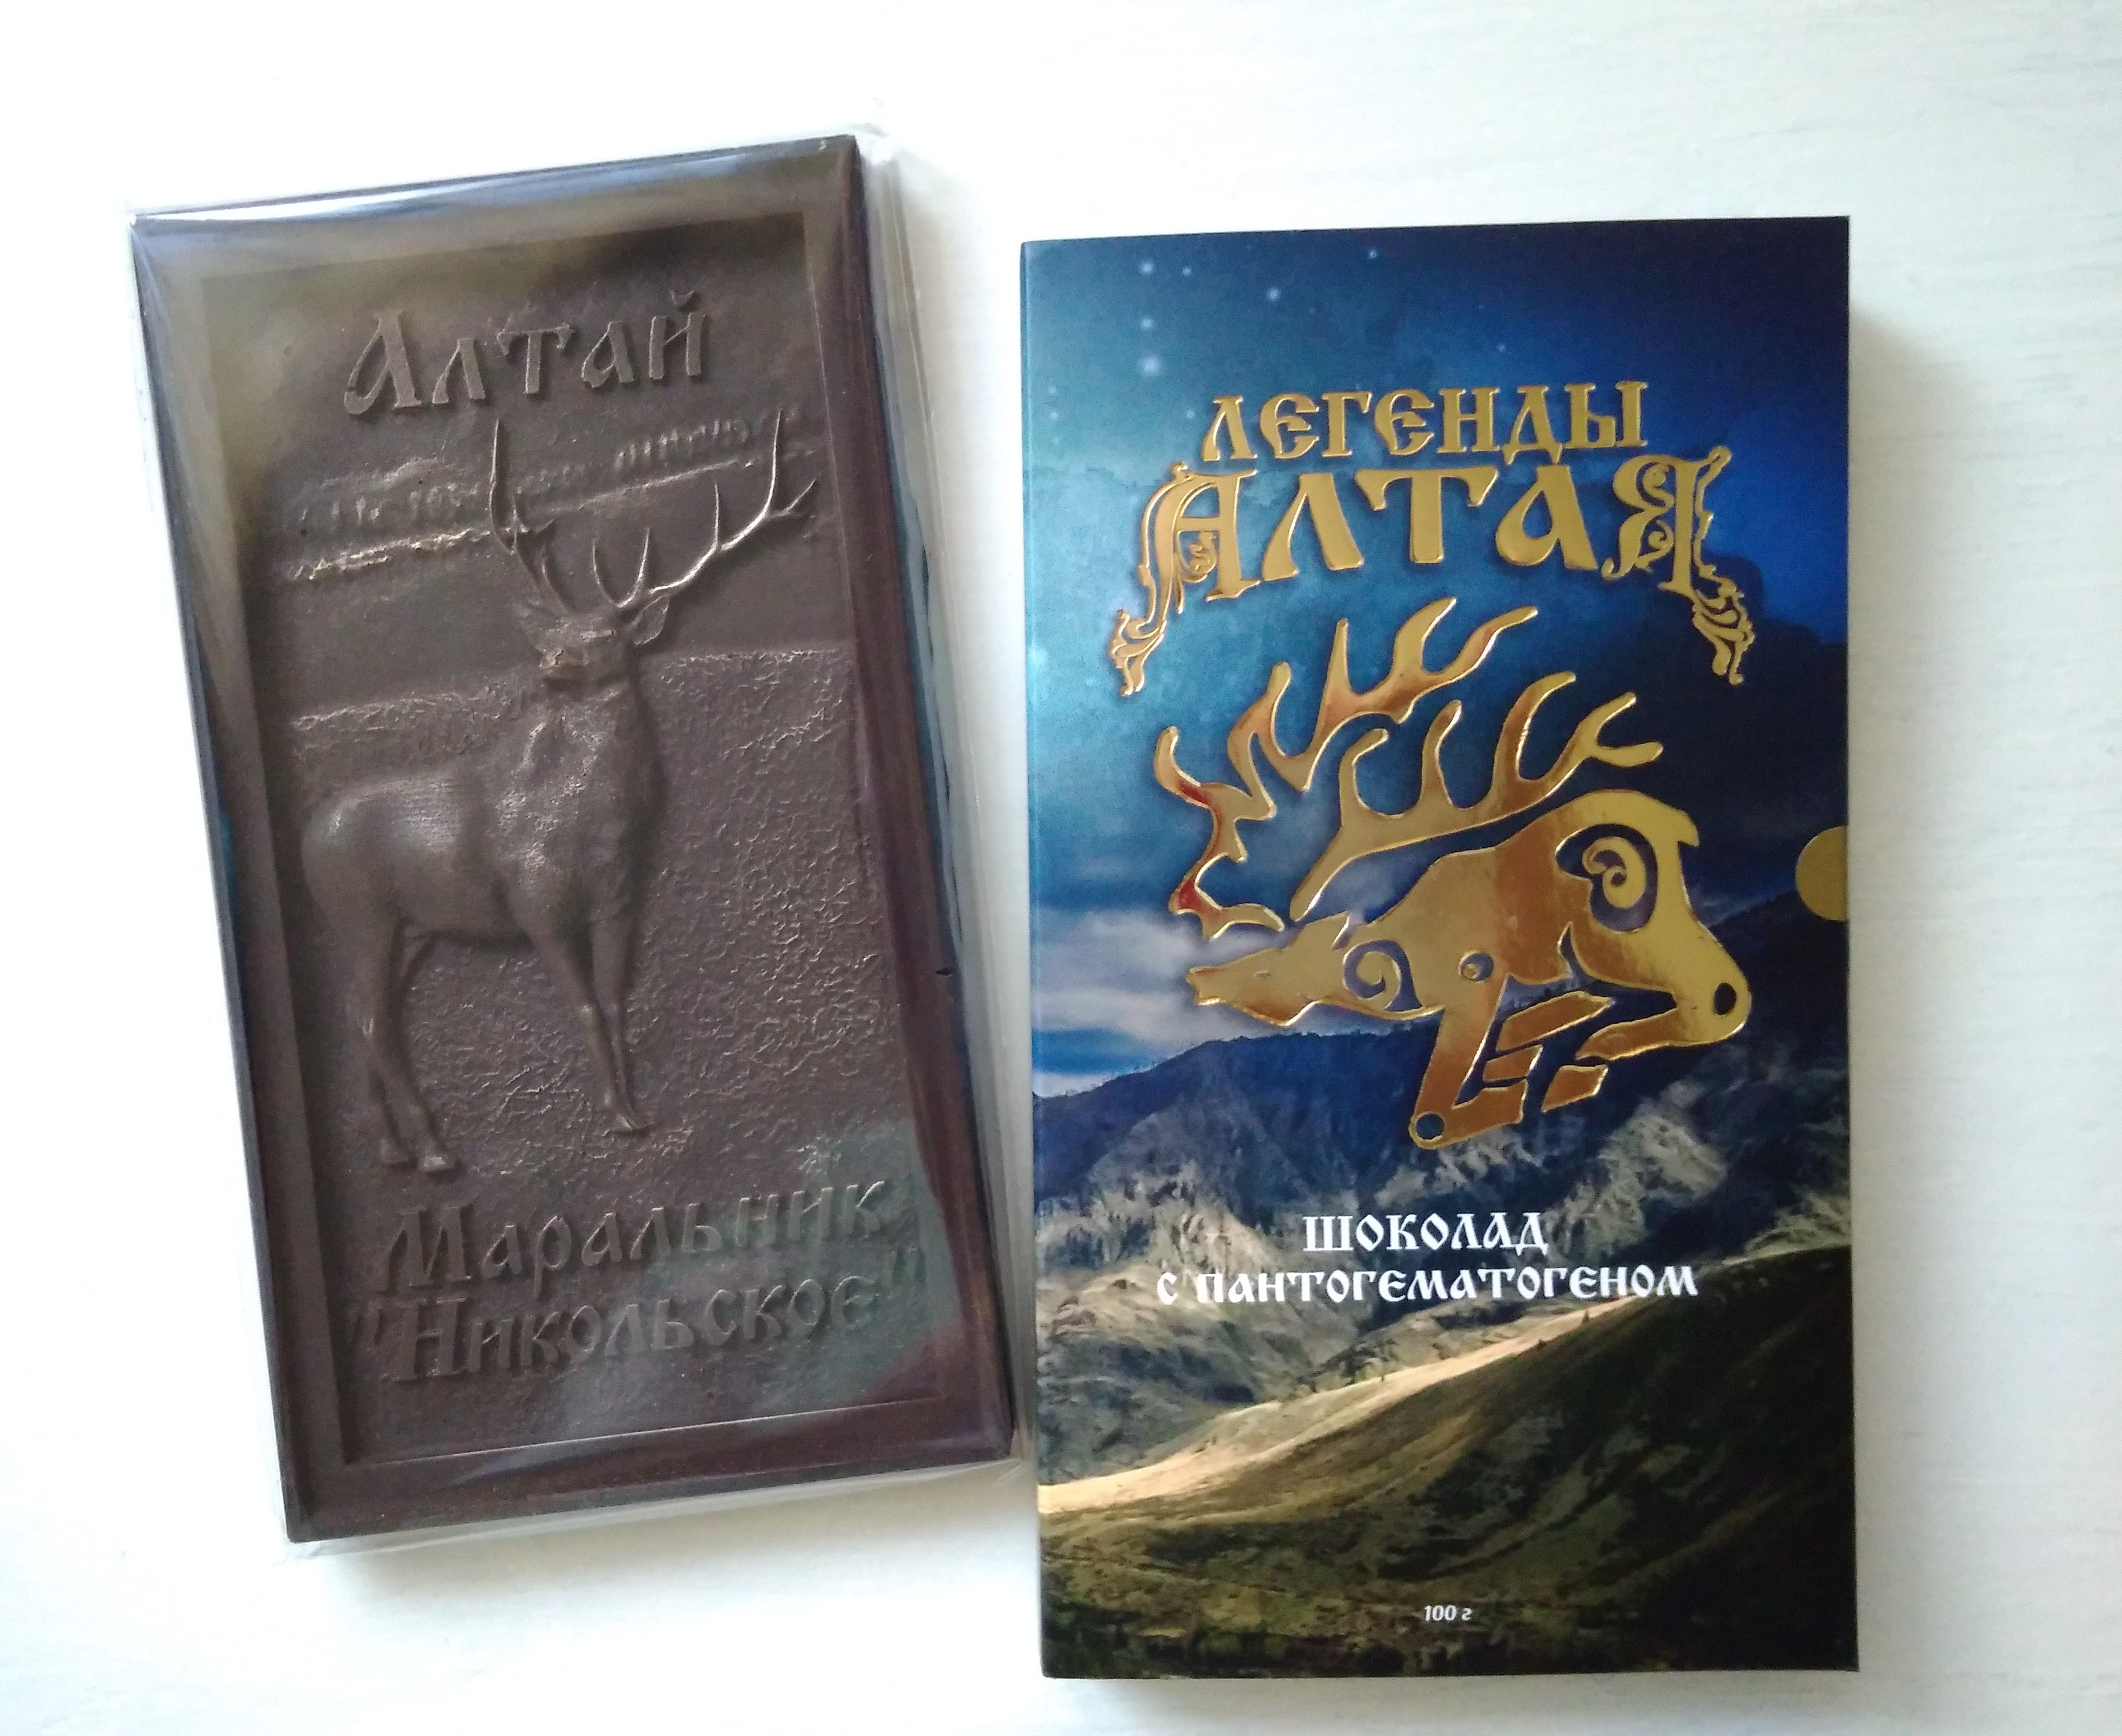 Приятное с полезным: темный шоколад с пантогематогеном выпускают в Алтайском крае — новости, предприятий, Алтайские товары